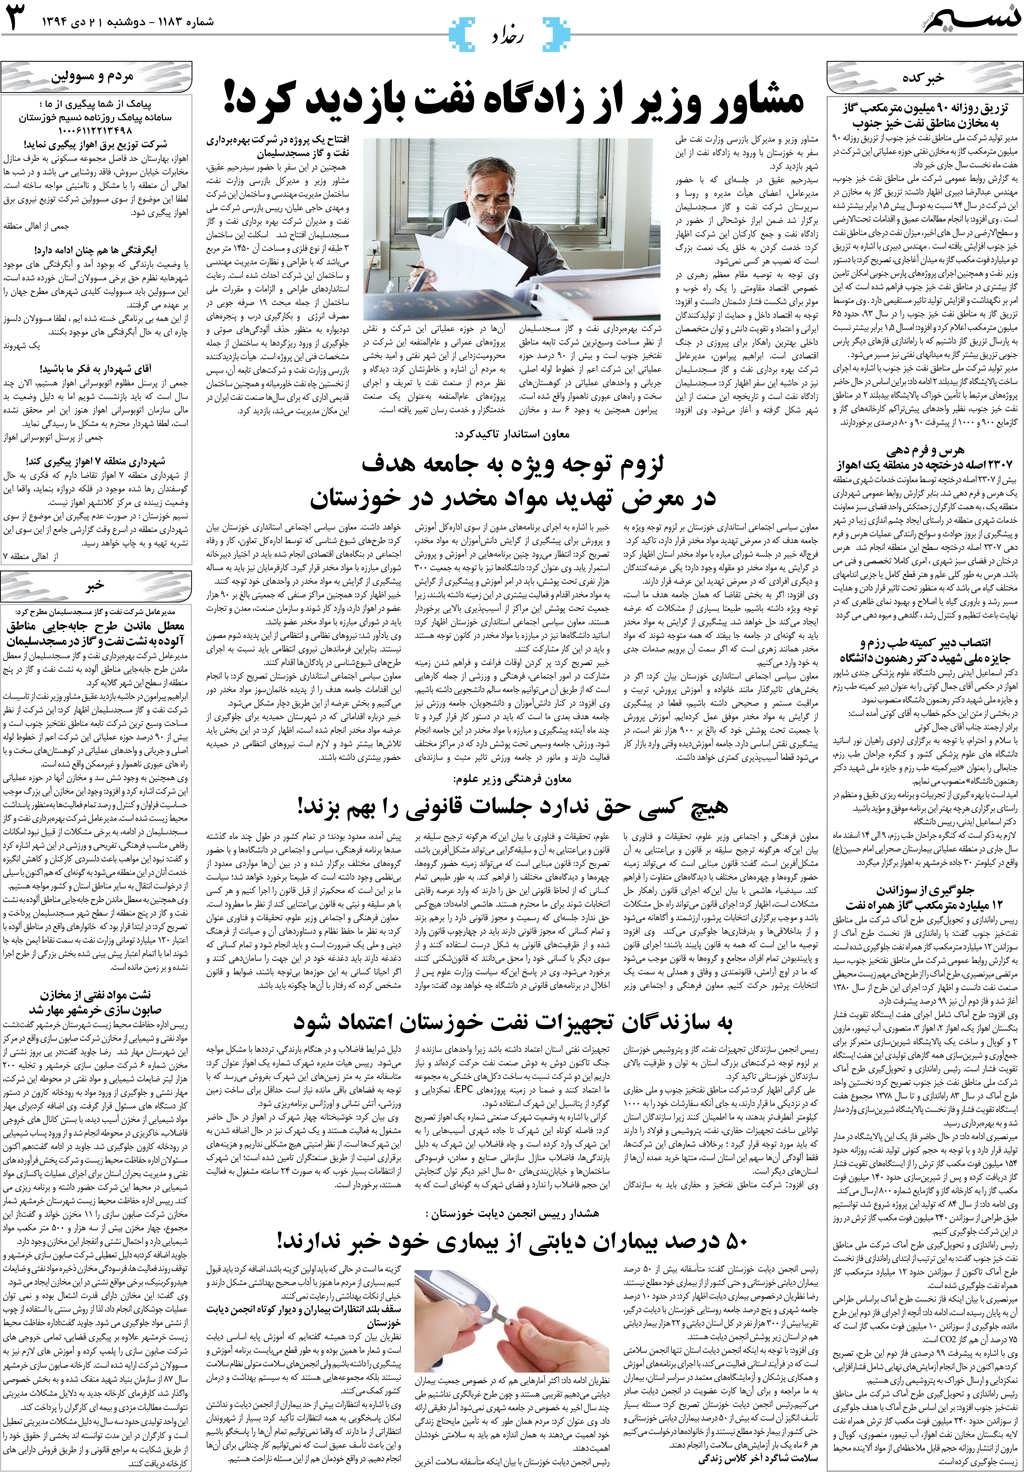 صفحه رخداد روزنامه نسیم شماره 1183